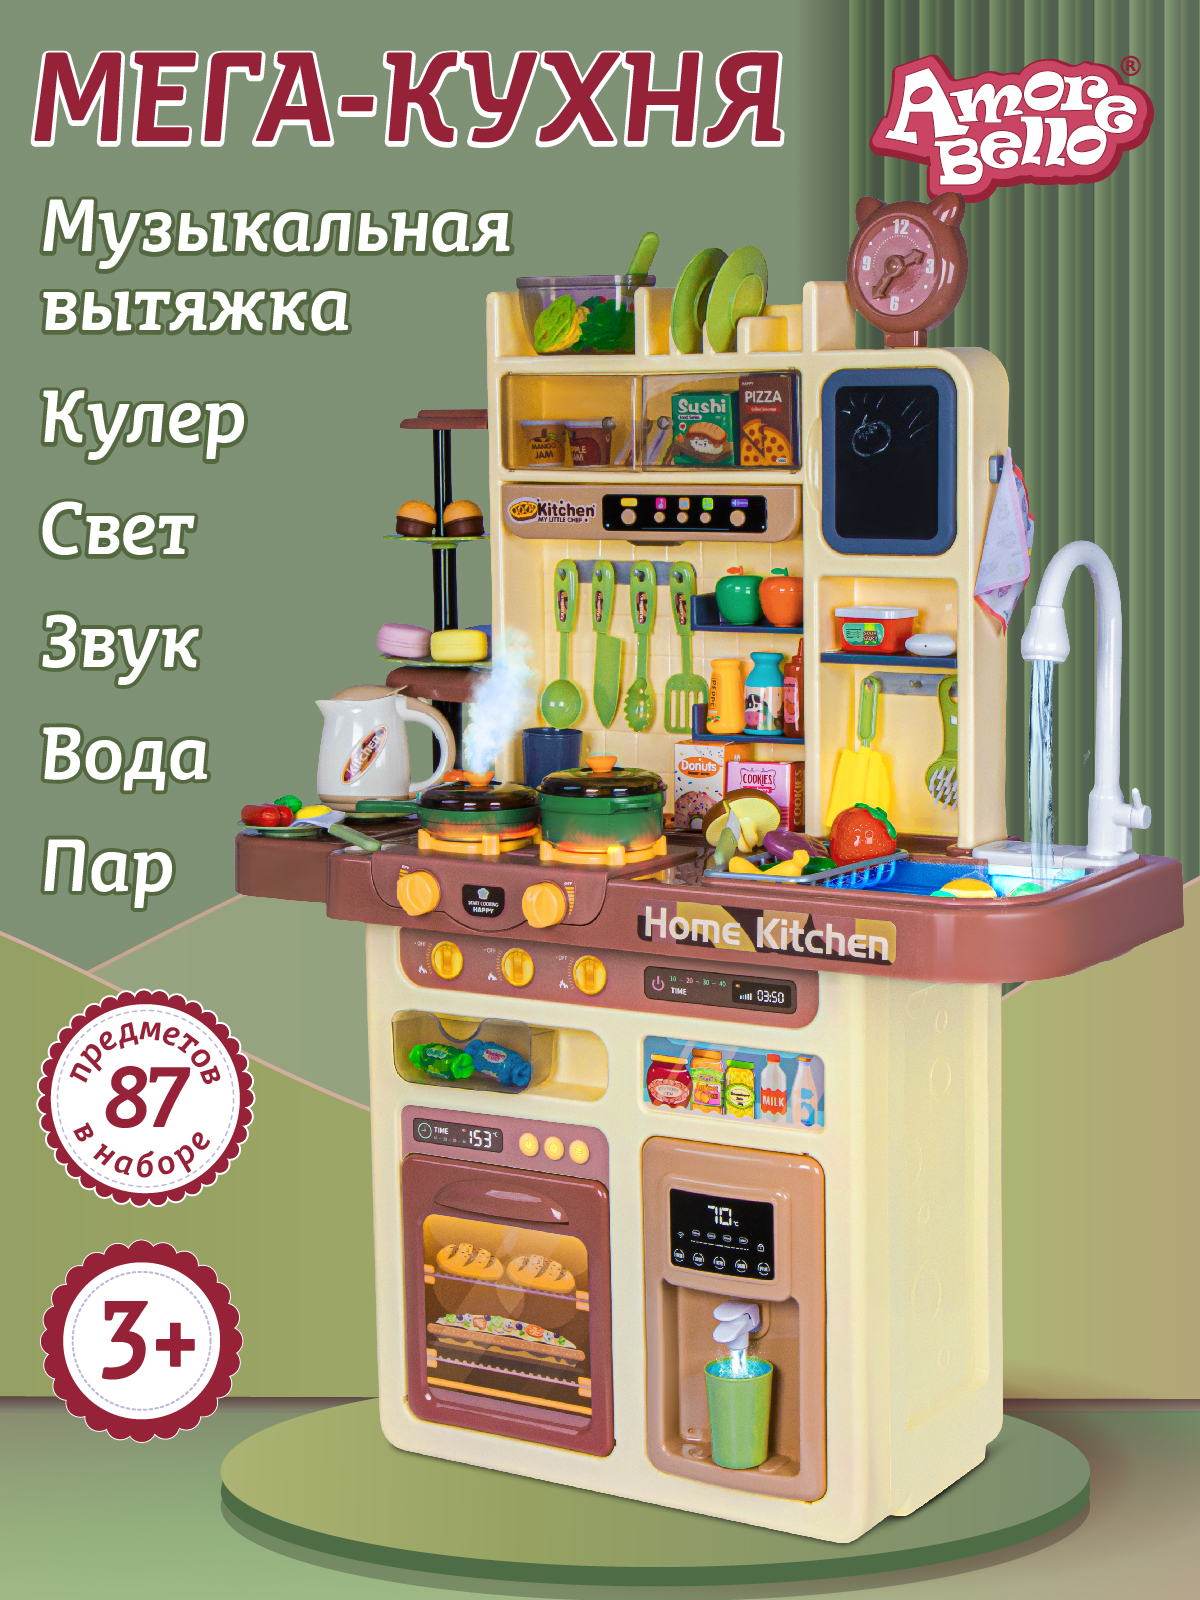 Игровой набор Amore Bello Кухня со свеовыми и звуковыми эффектам пар кран-помпа JB0211651 игровой модуль кухня